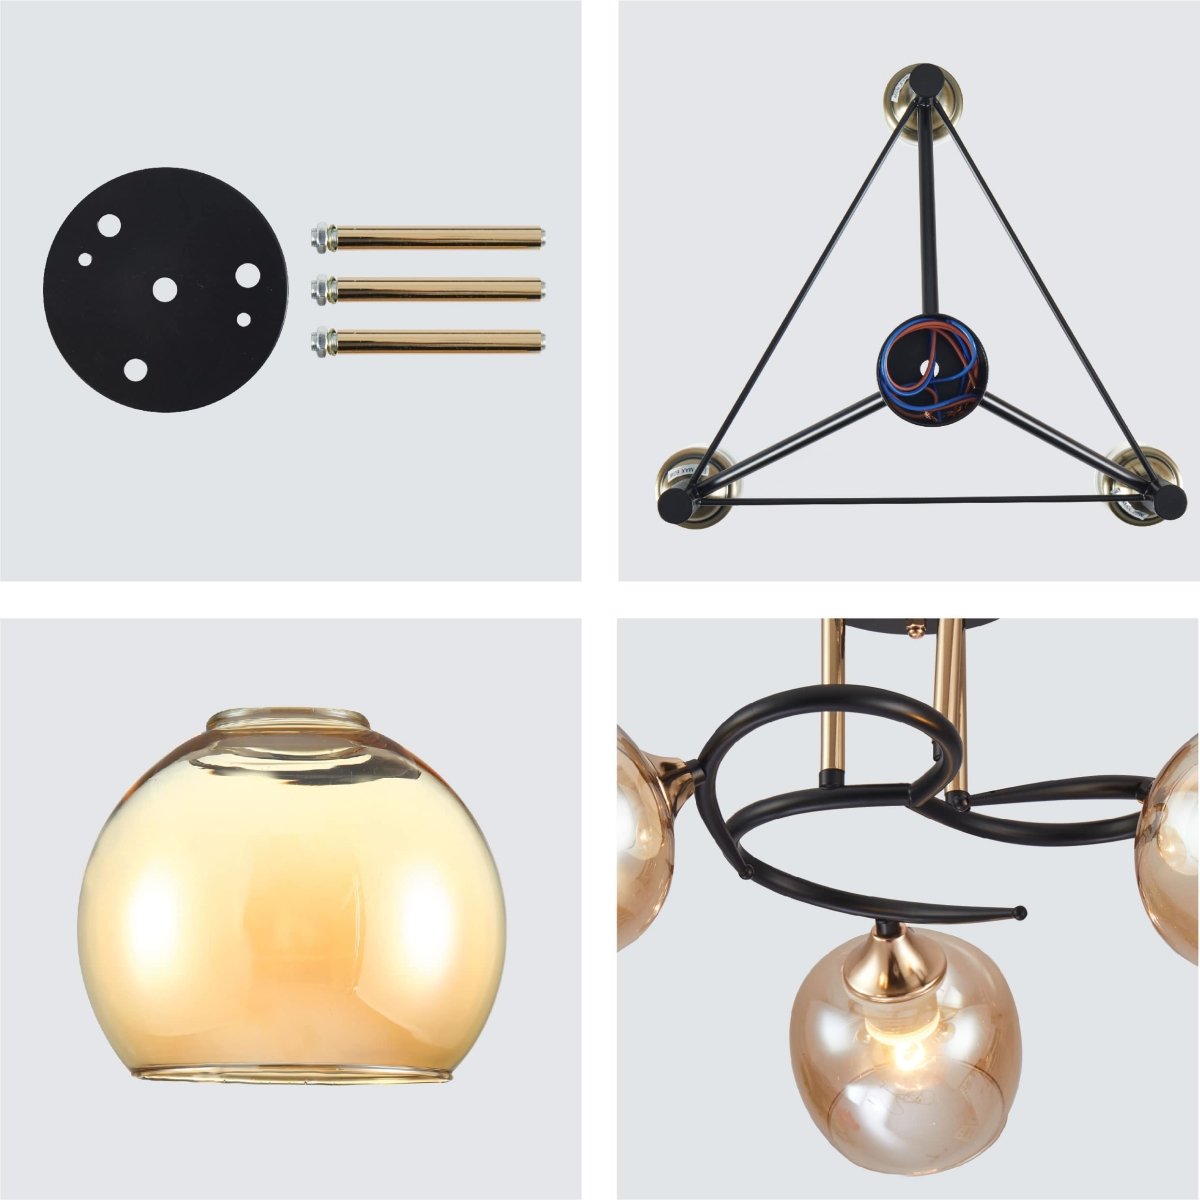 Details of Amber Bell Glass Black Gold Metal Semi Flush Ceiling Light | TEKLED 159-17130